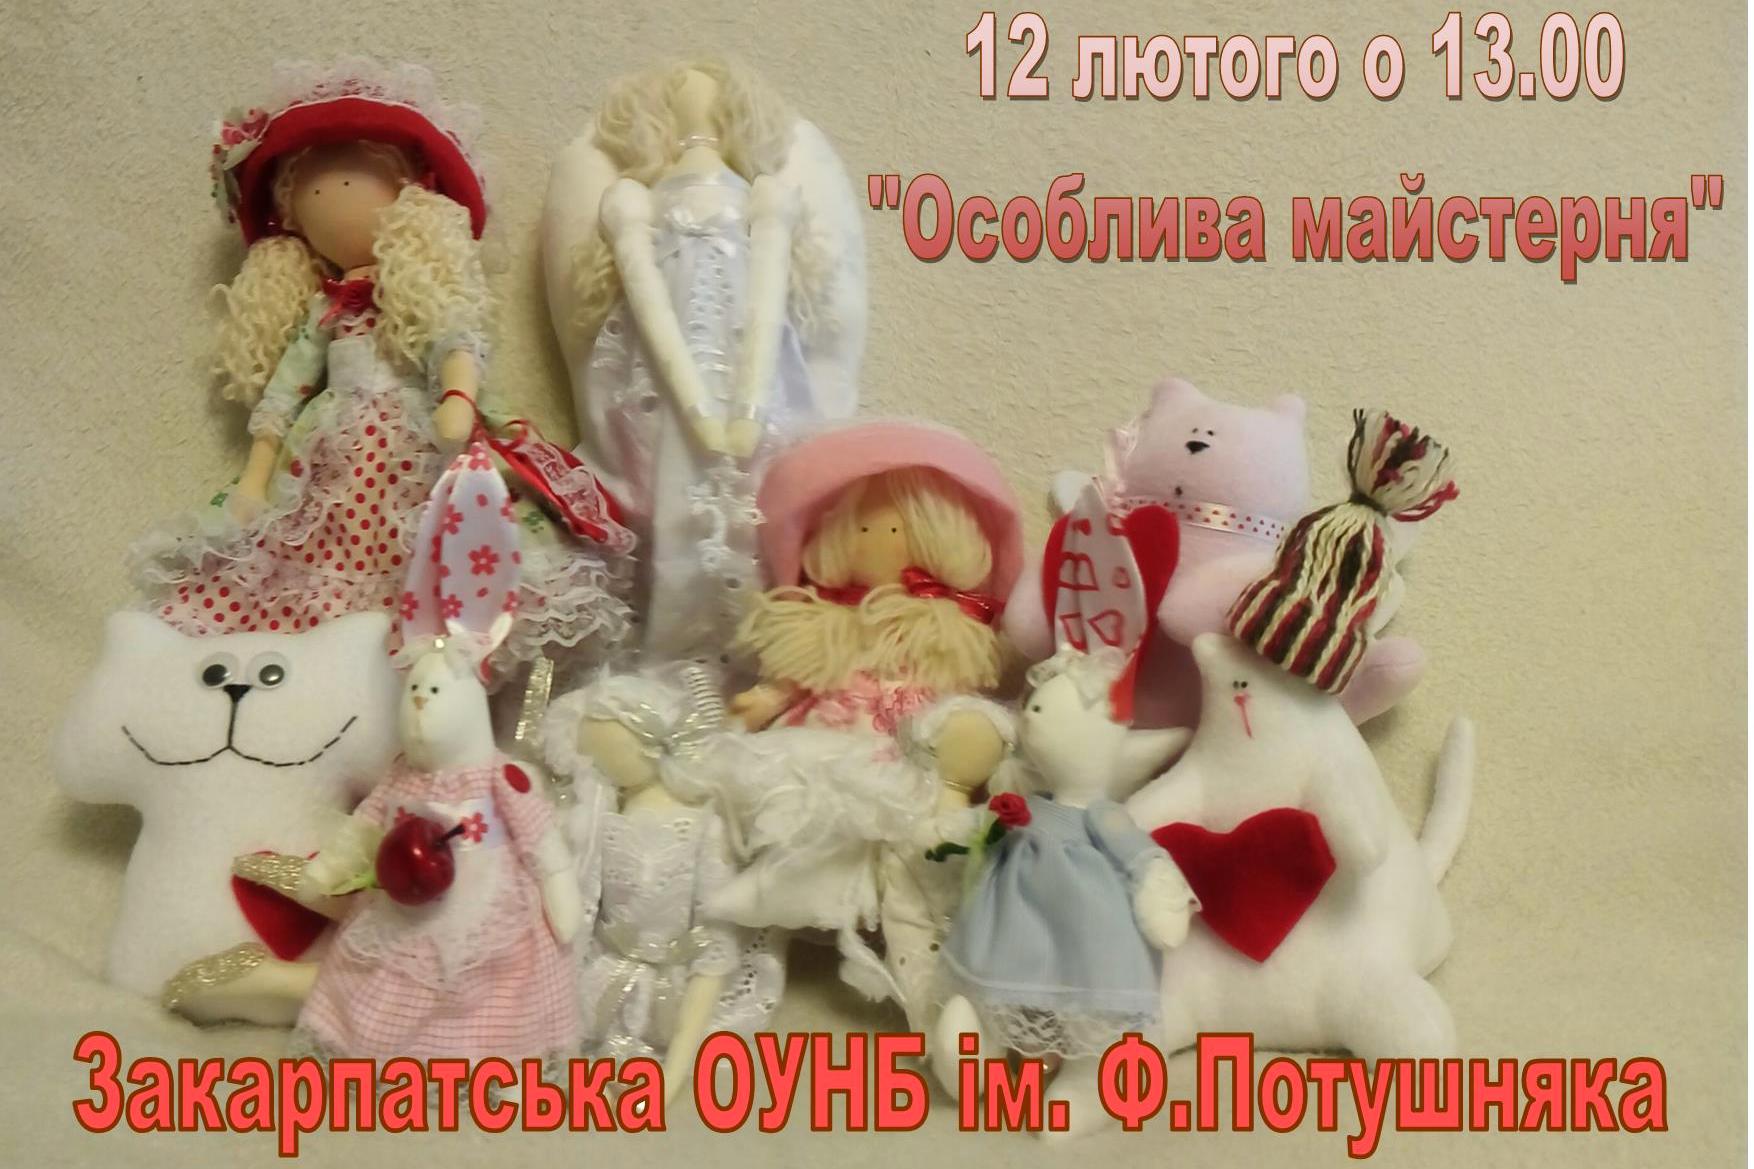 12 лютого в Ужгороді відбудеться святковий майстер-клас з виготовлення сувенірів та м'яких іграшок.